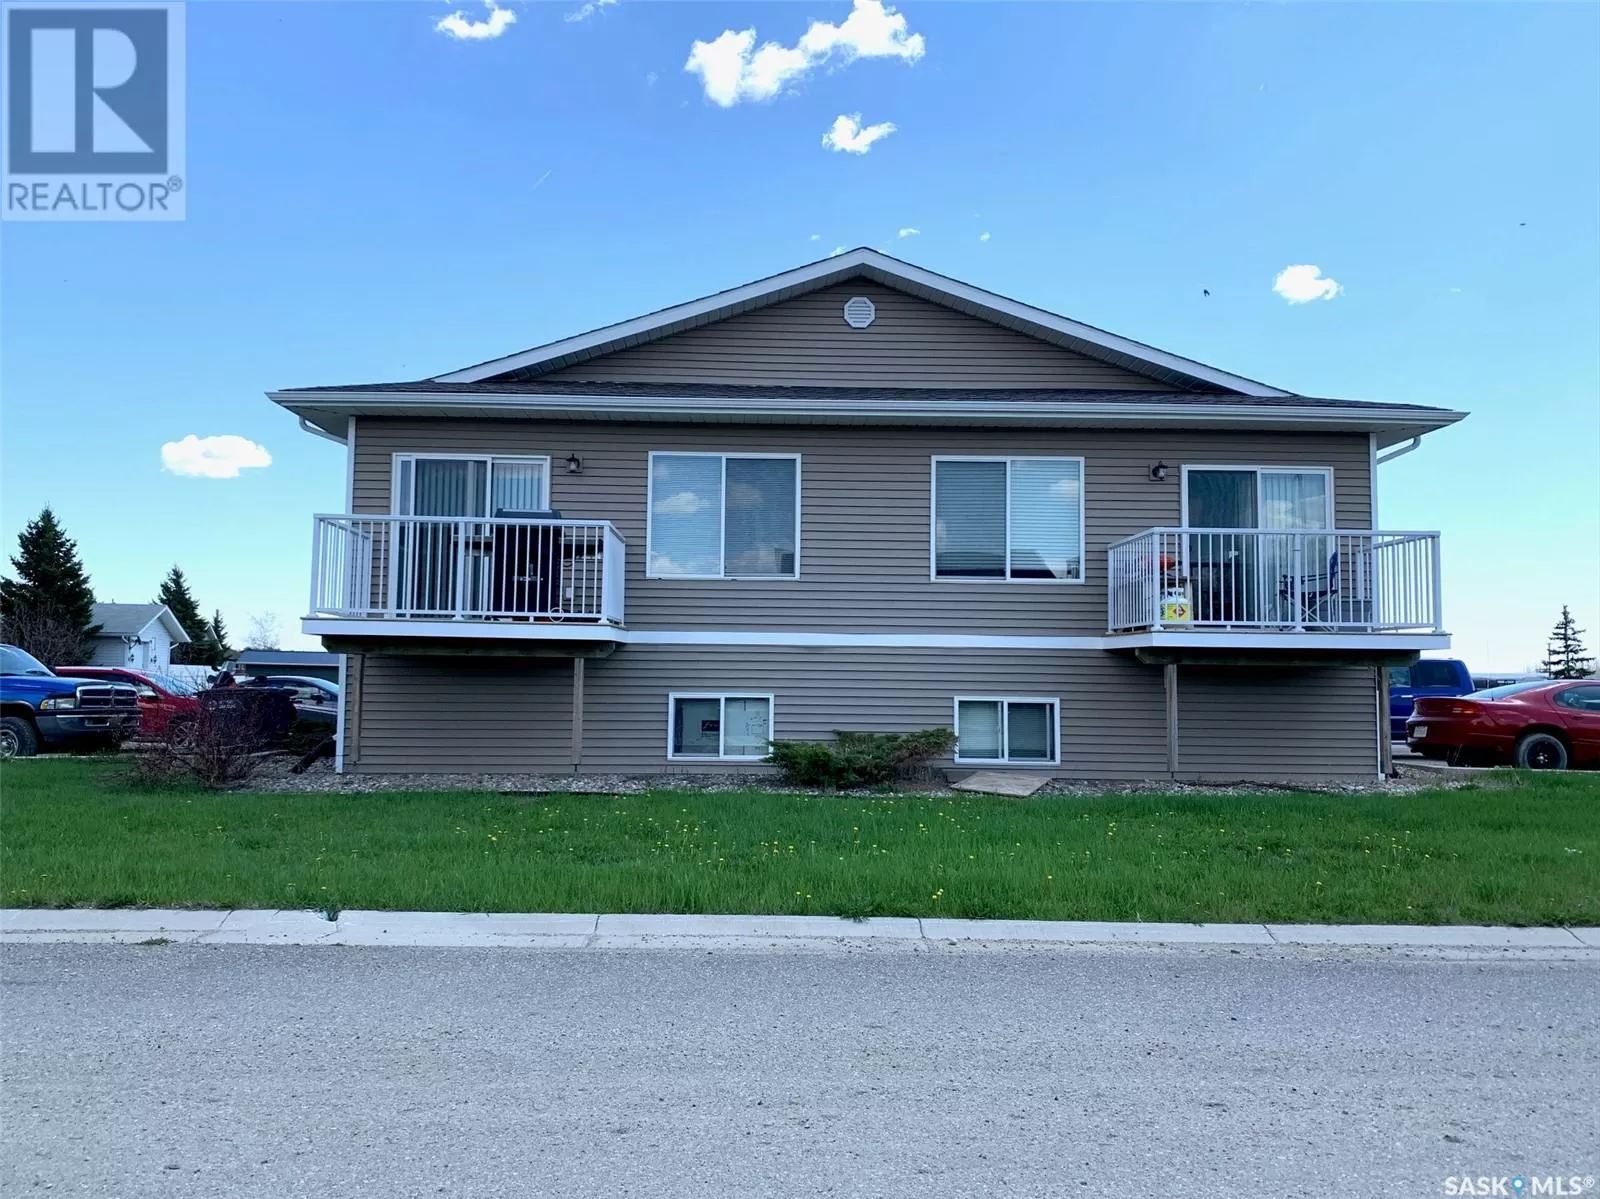 Fourplex for rent: 1102 Park Avenue, Rocanville, Saskatchewan S0A 3L0